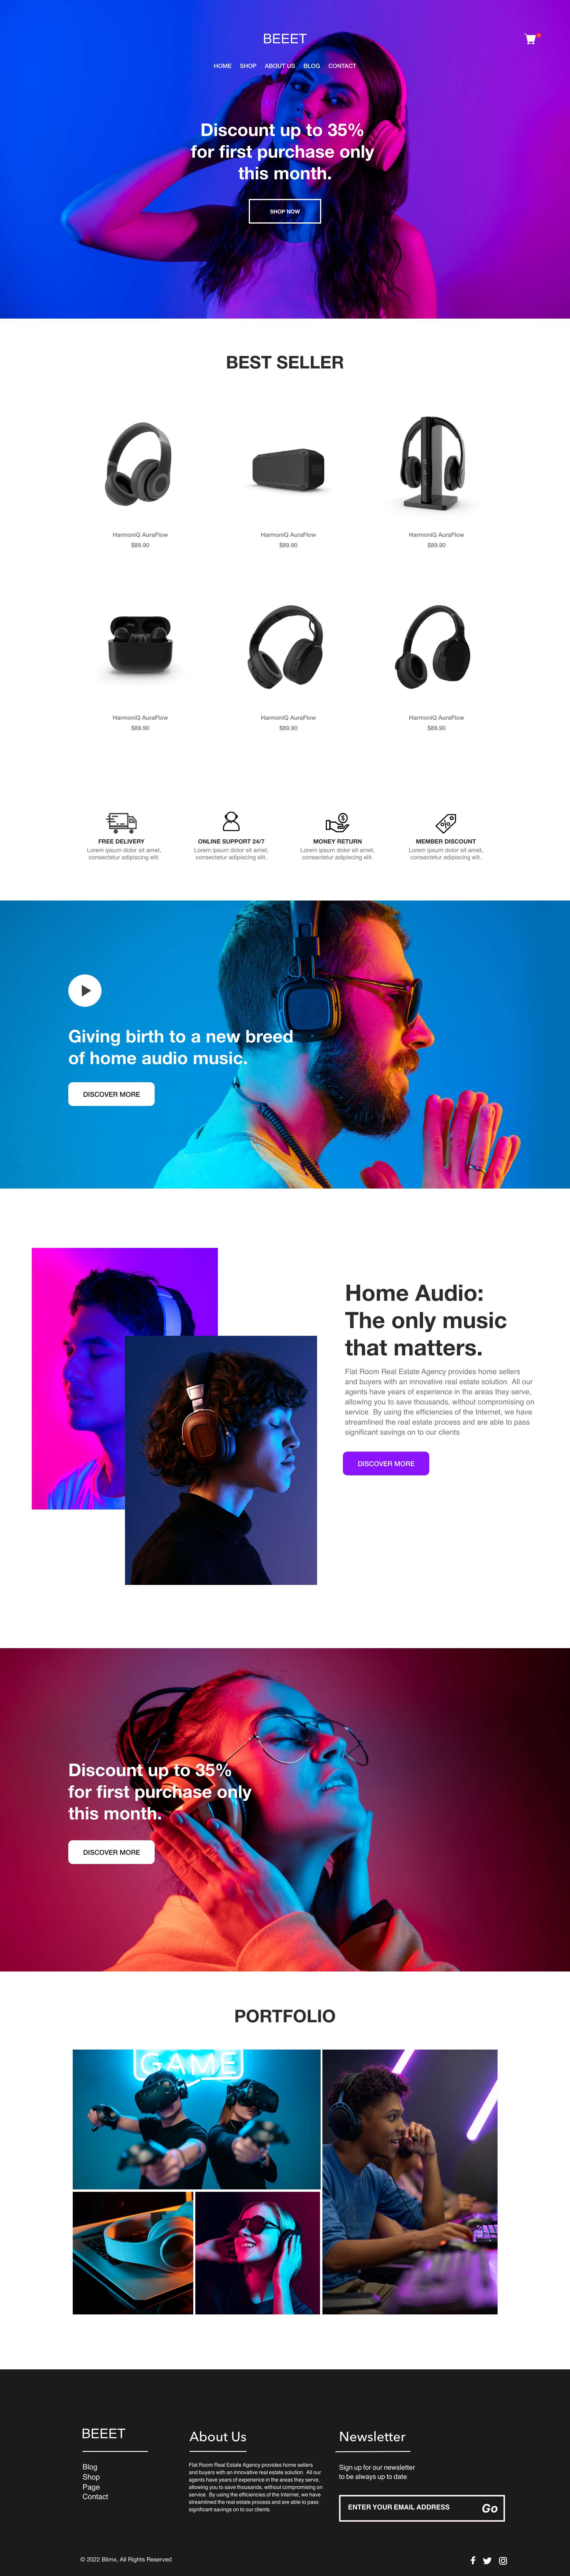 Headphones & Home Audio Website Design